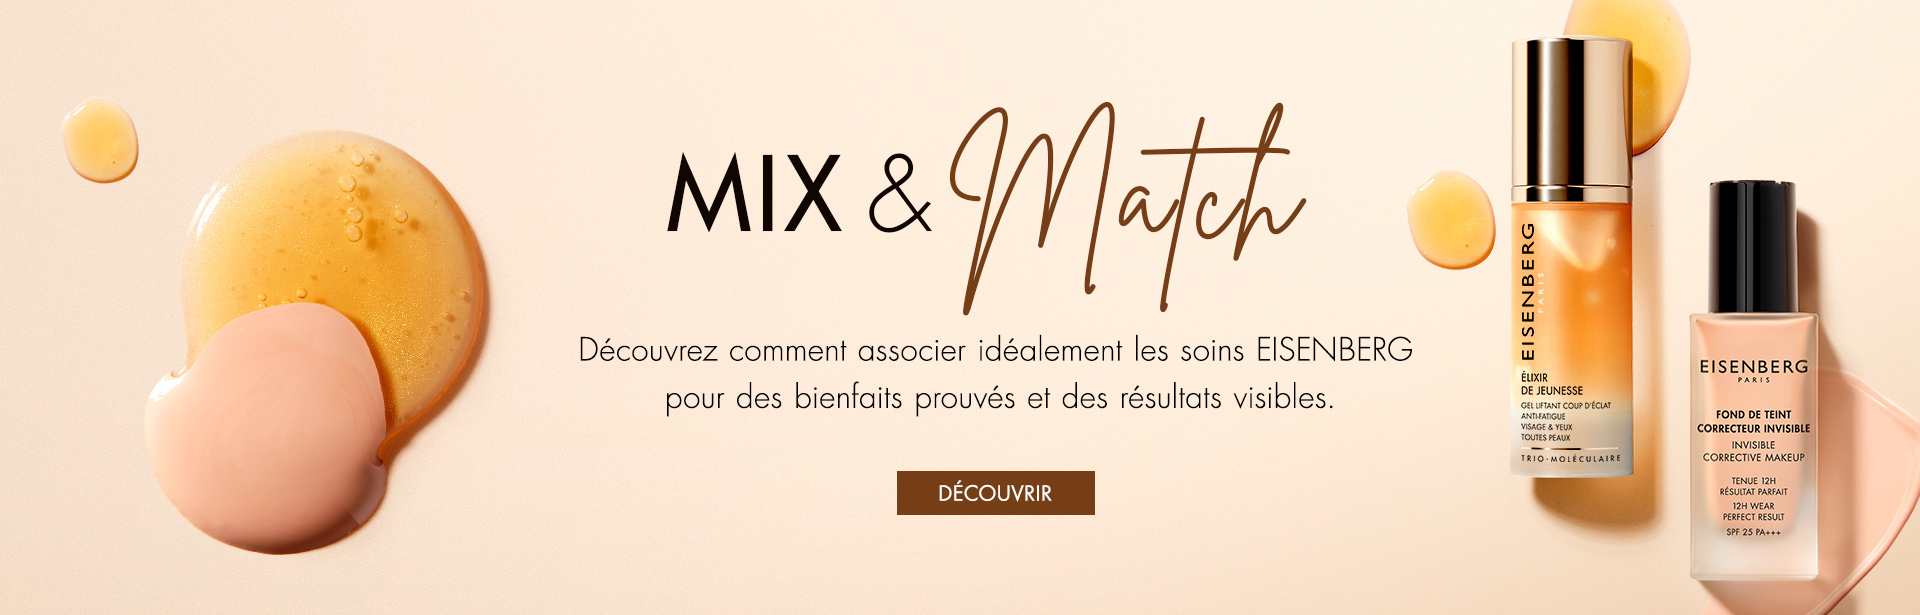 MIX X MATCH - FR